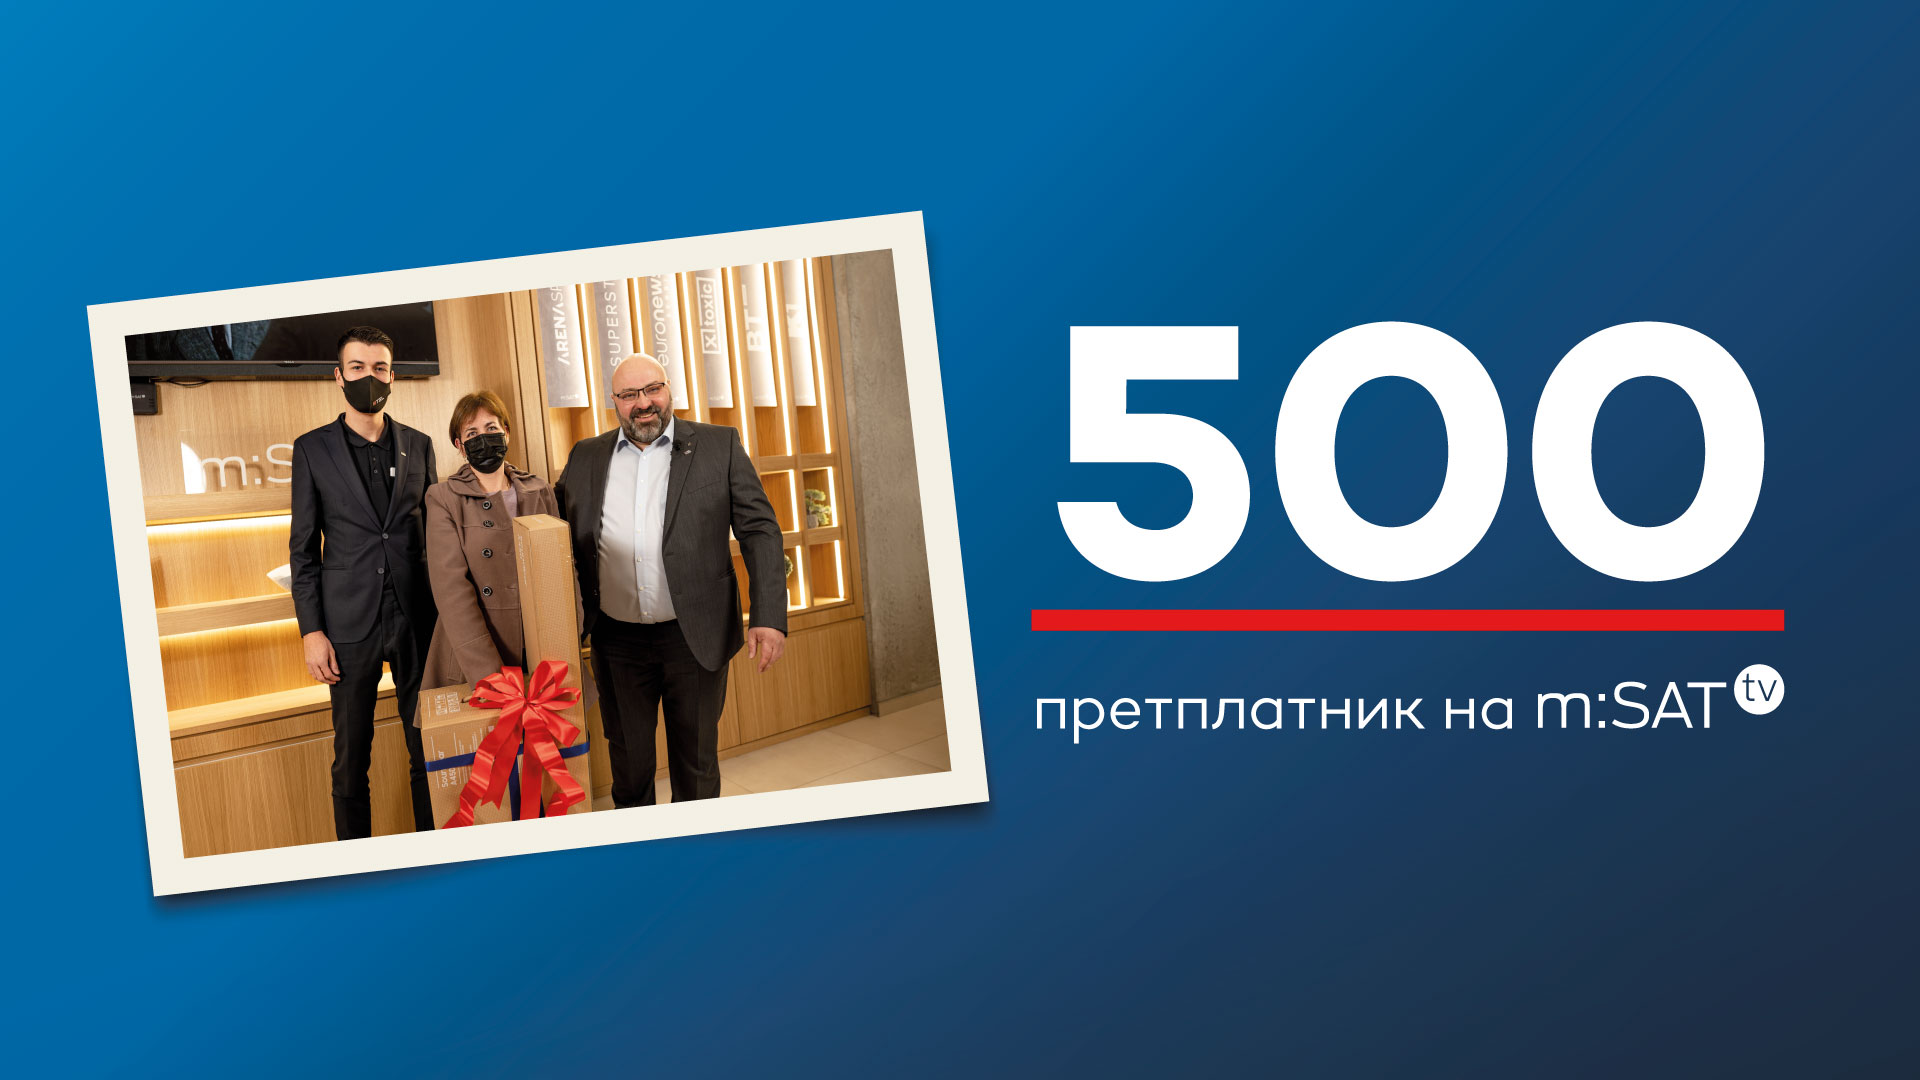 Abonenti i 500-të i mSAT TV në Maqedoni